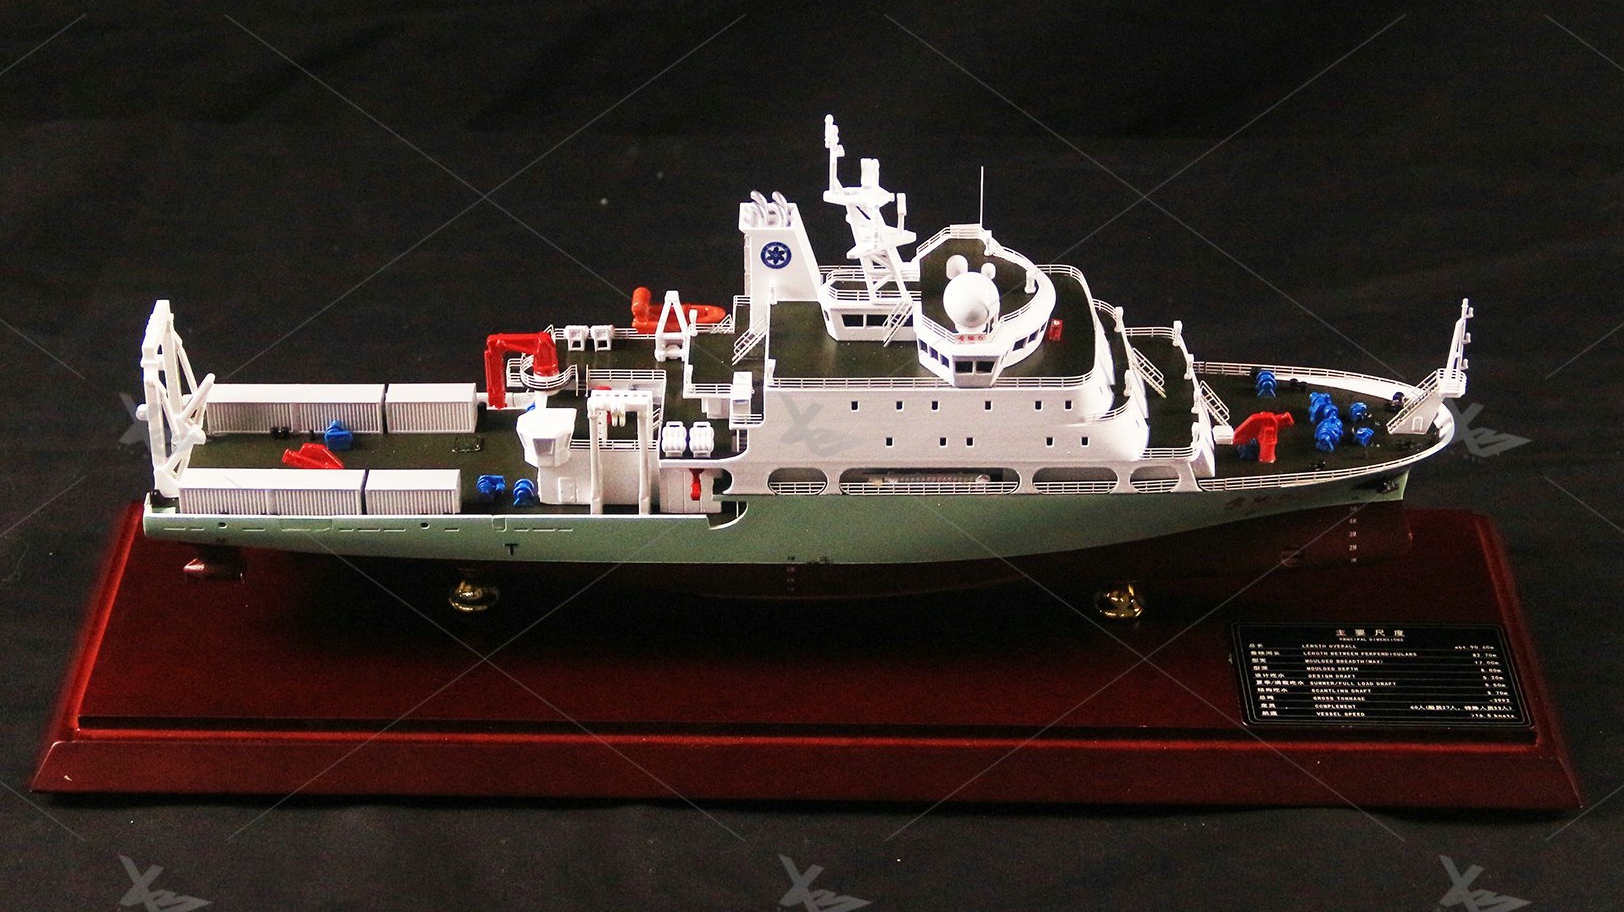 公務船模型-科學考察船“實驗6”號模型船